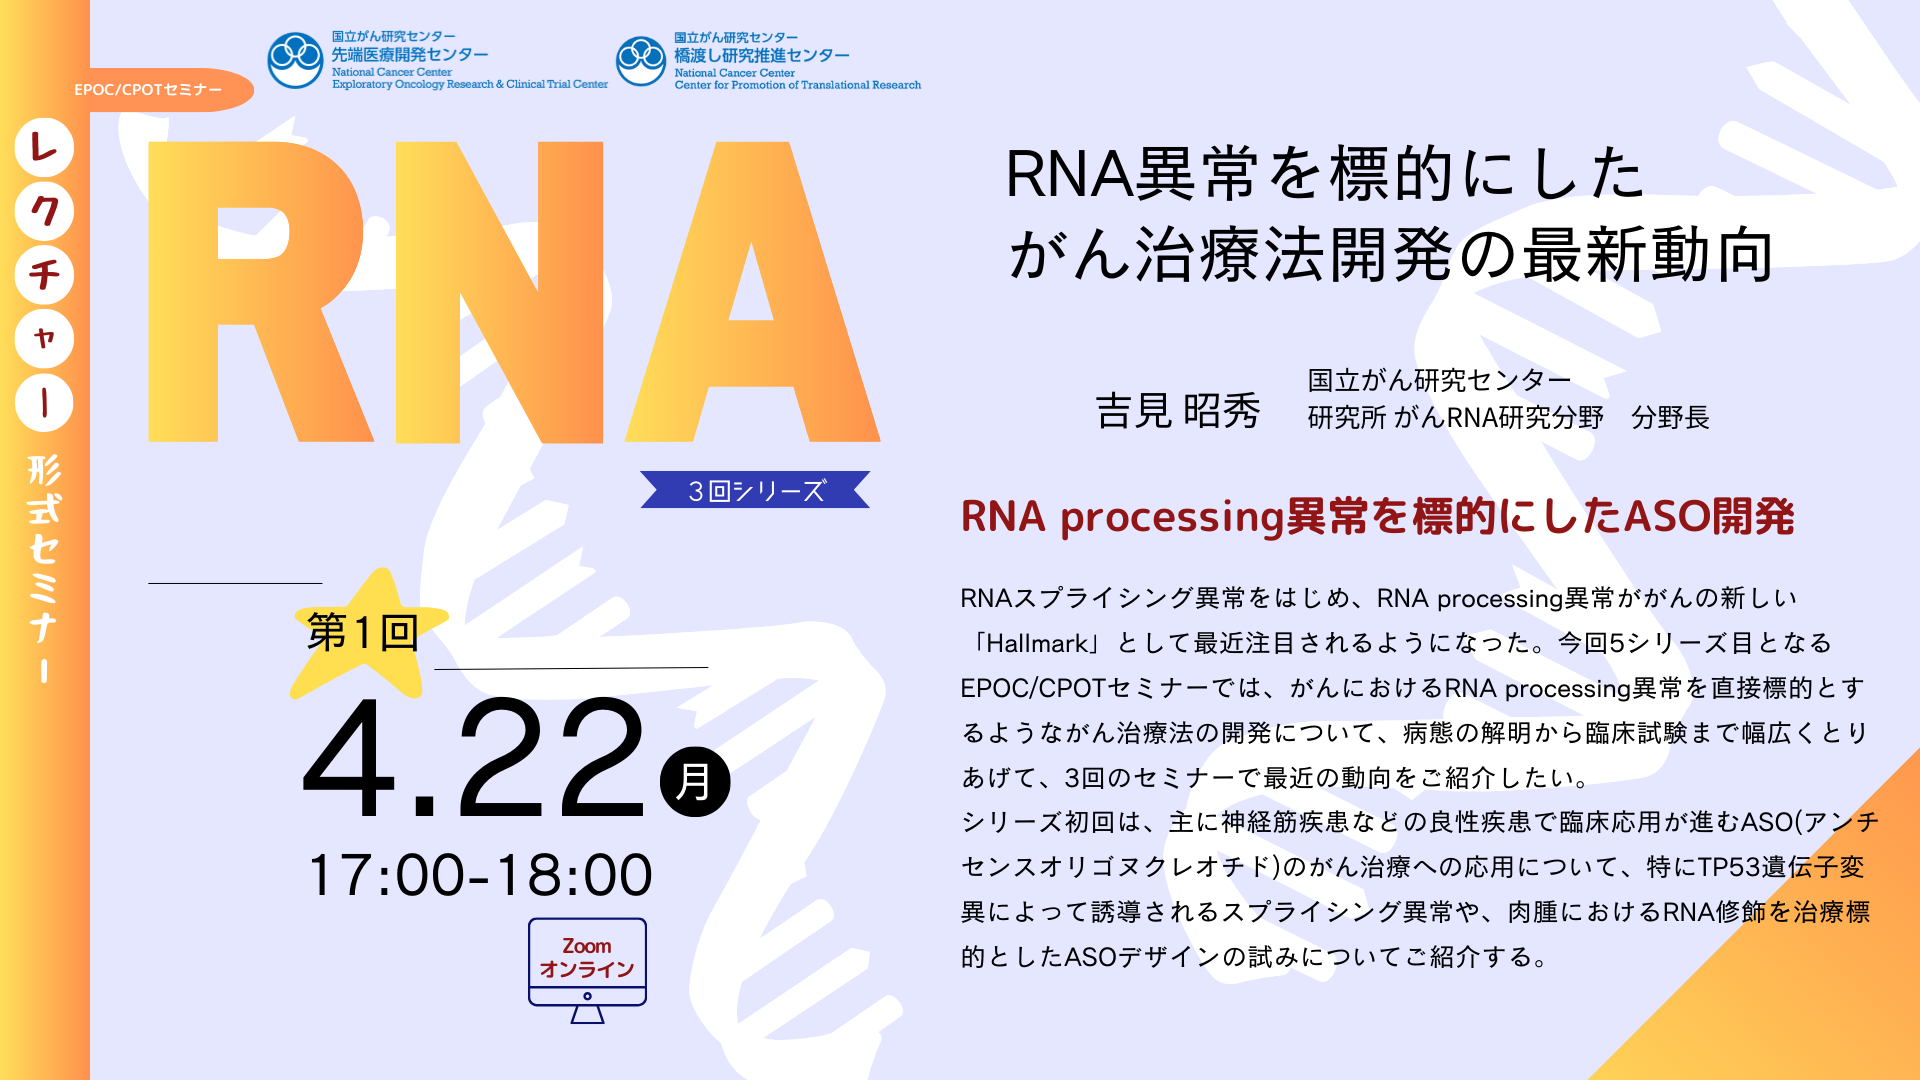 レクチャー形式セミナー「RNA異常を標的にしたがん治療法開発の最新動向」３回シリーズ 開催